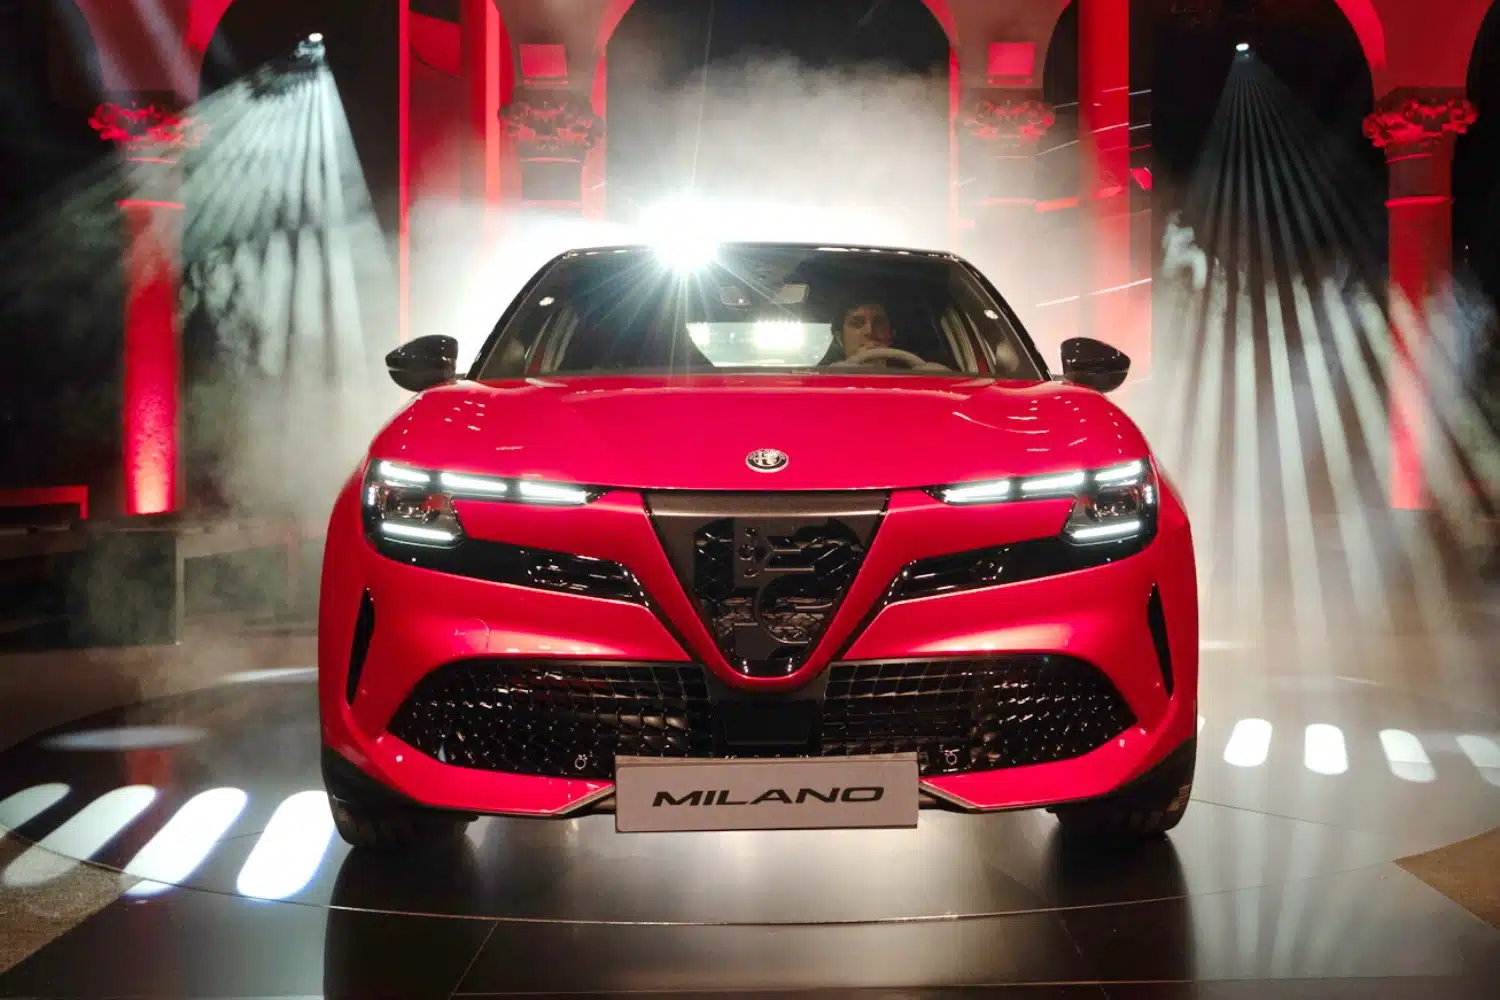 Le 10 auto ispirate all’Italia, da Alfa Romeo Milano alla Pagani Imola